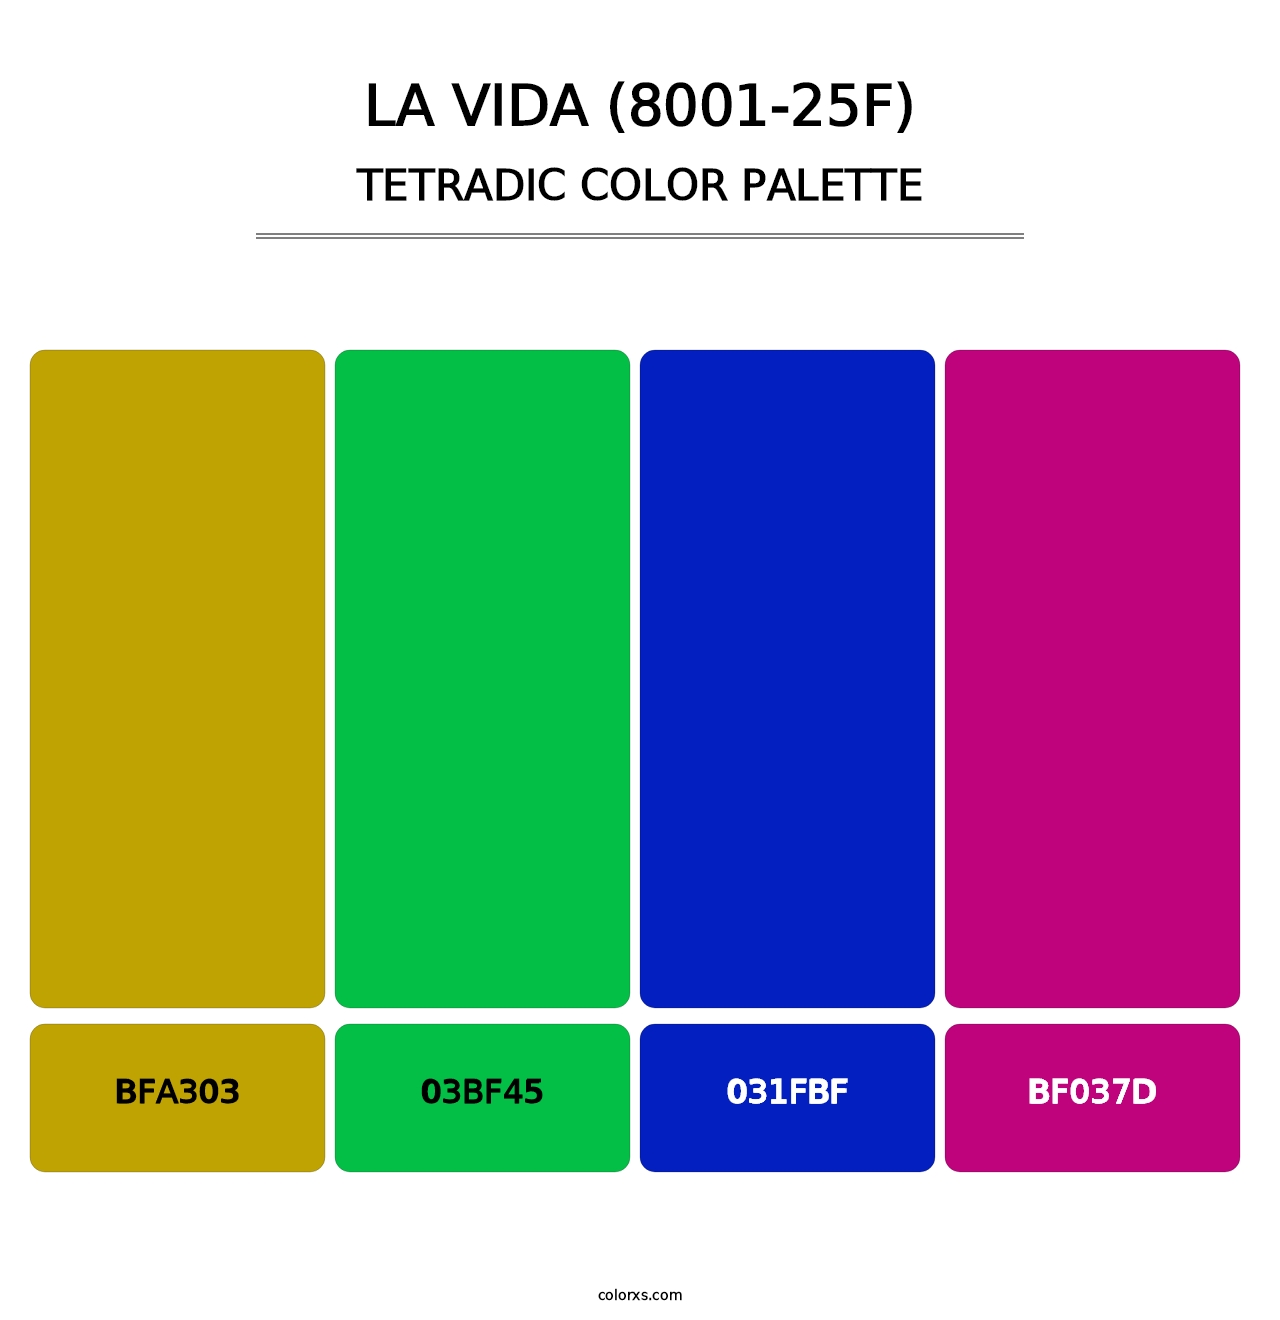 La Vida (8001-25F) - Tetradic Color Palette